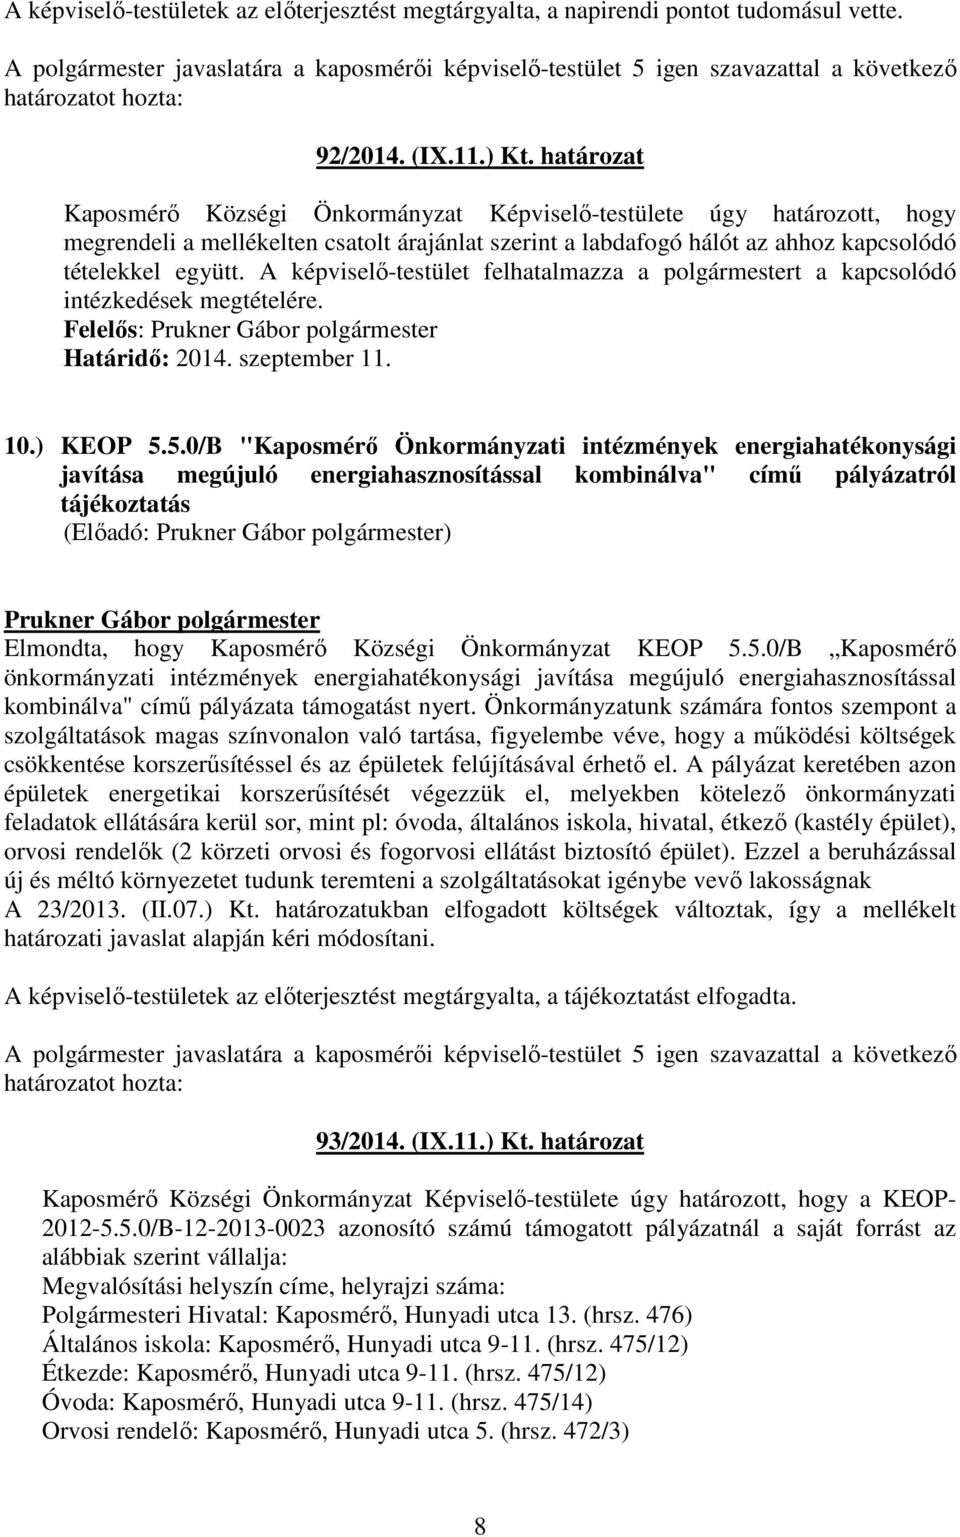 A képviselı-testület felhatalmazza a polgármestert a kapcsolódó intézkedések megtételére. Felelıs: 10.) KEOP 5.